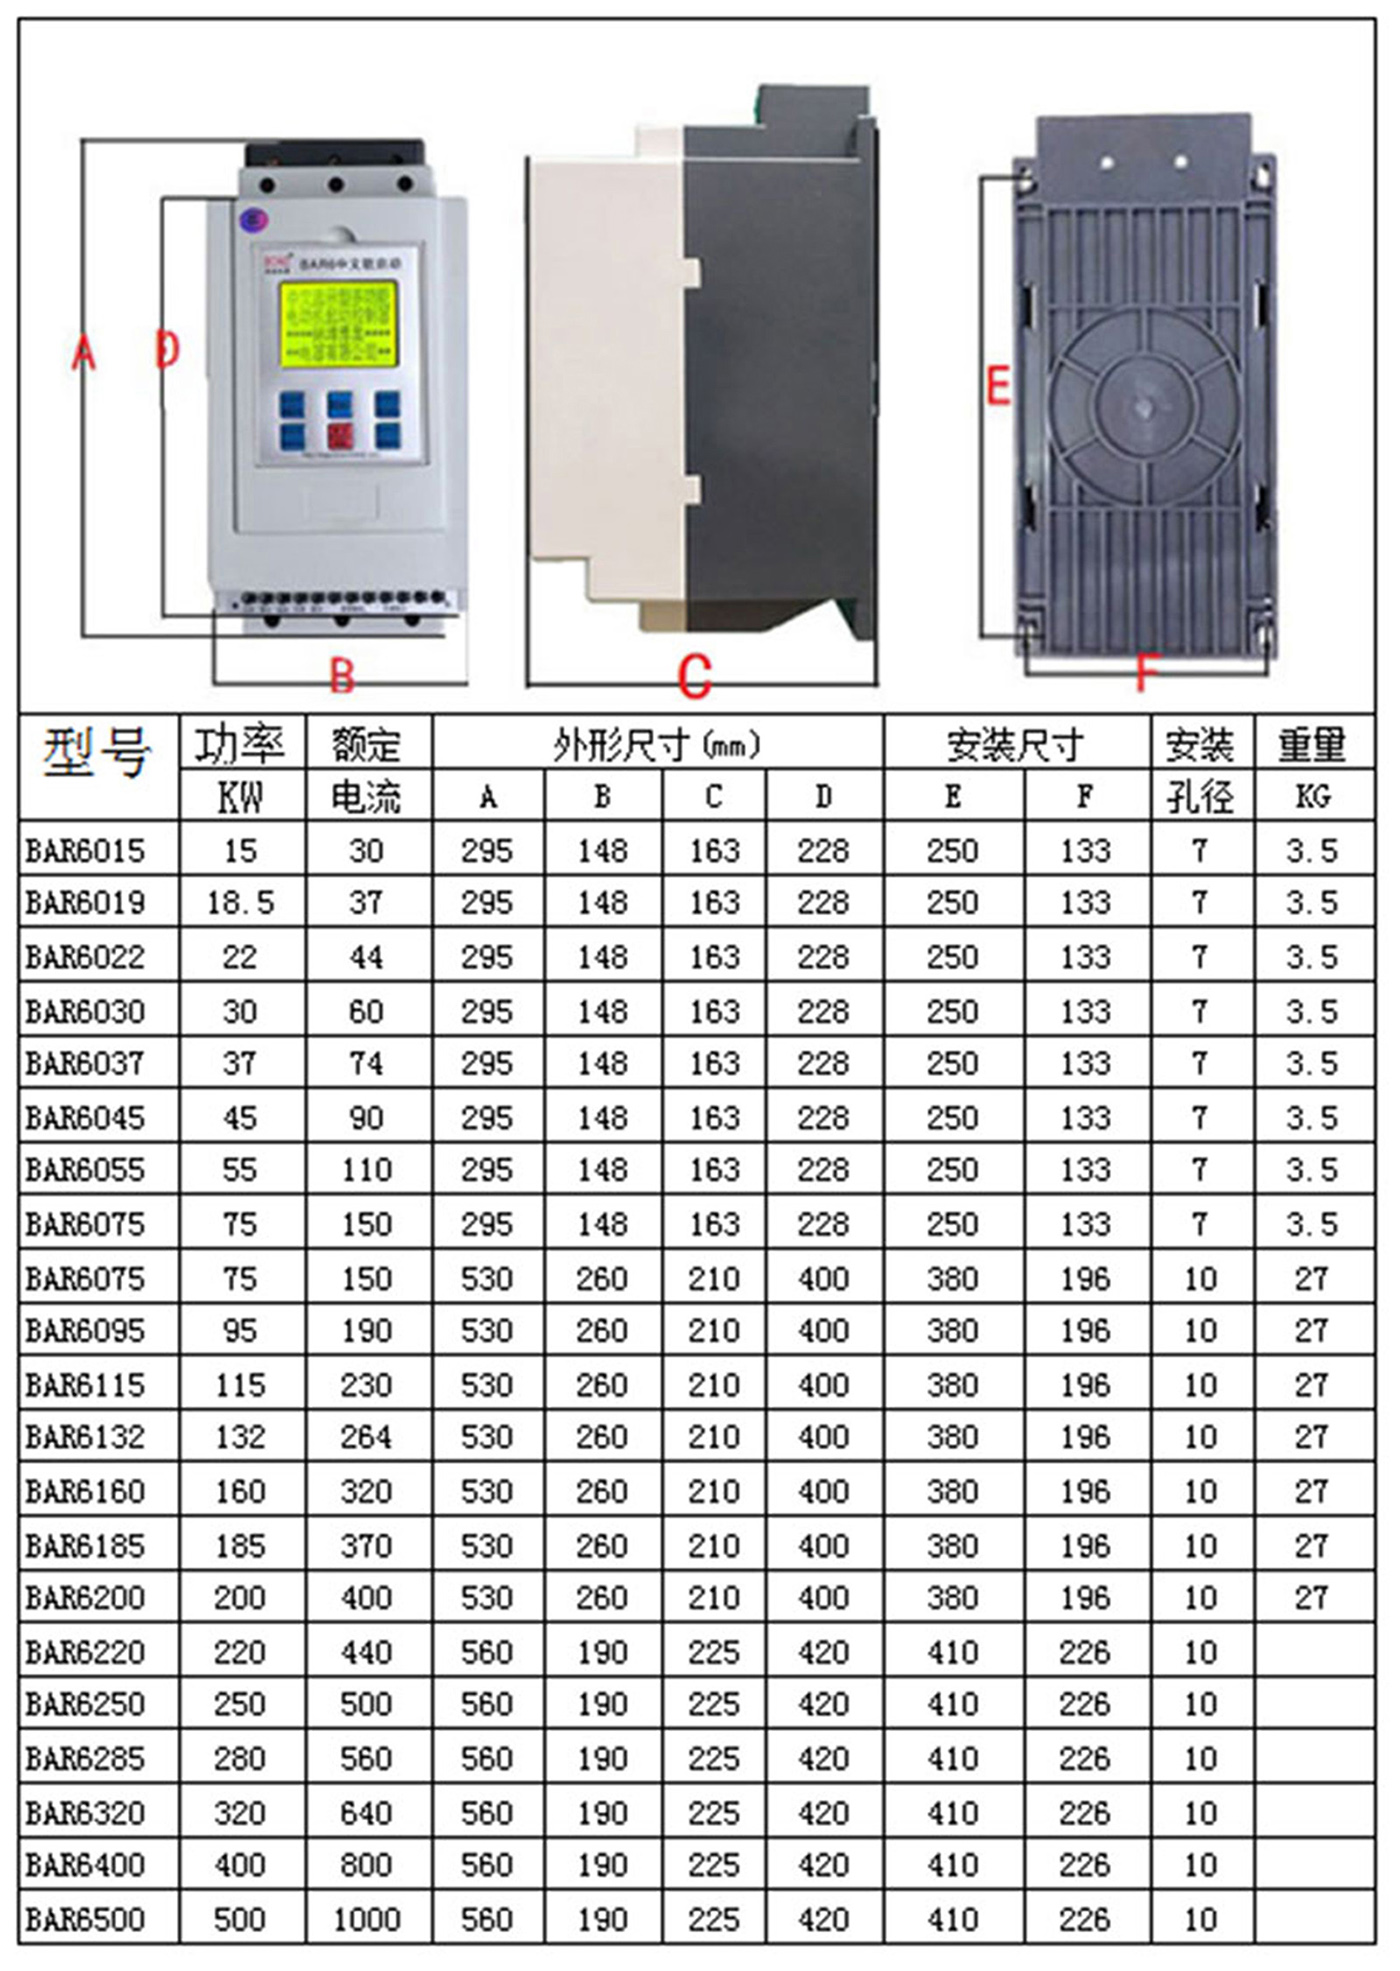 温州市上海软启动器厂家上海软启动器-上海软启动器